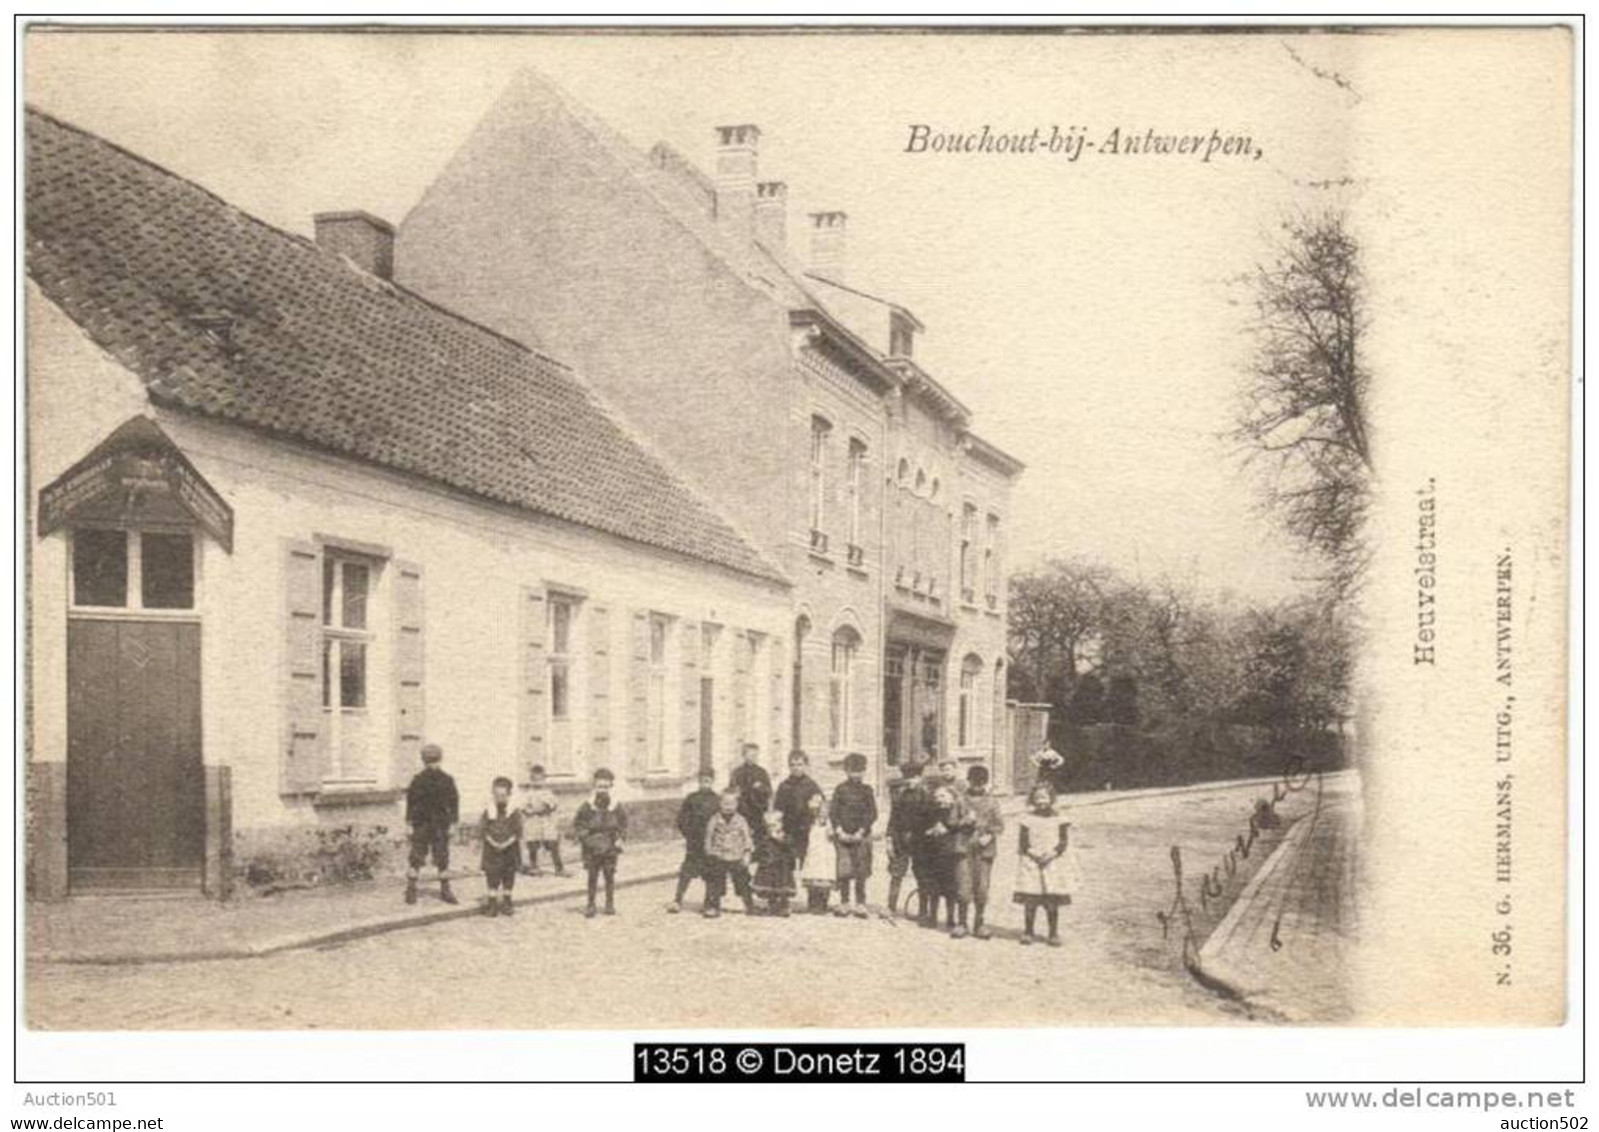 13518g Bouchout-bij-Antwerpen - Heuvelstraat - 1903 - Boechout